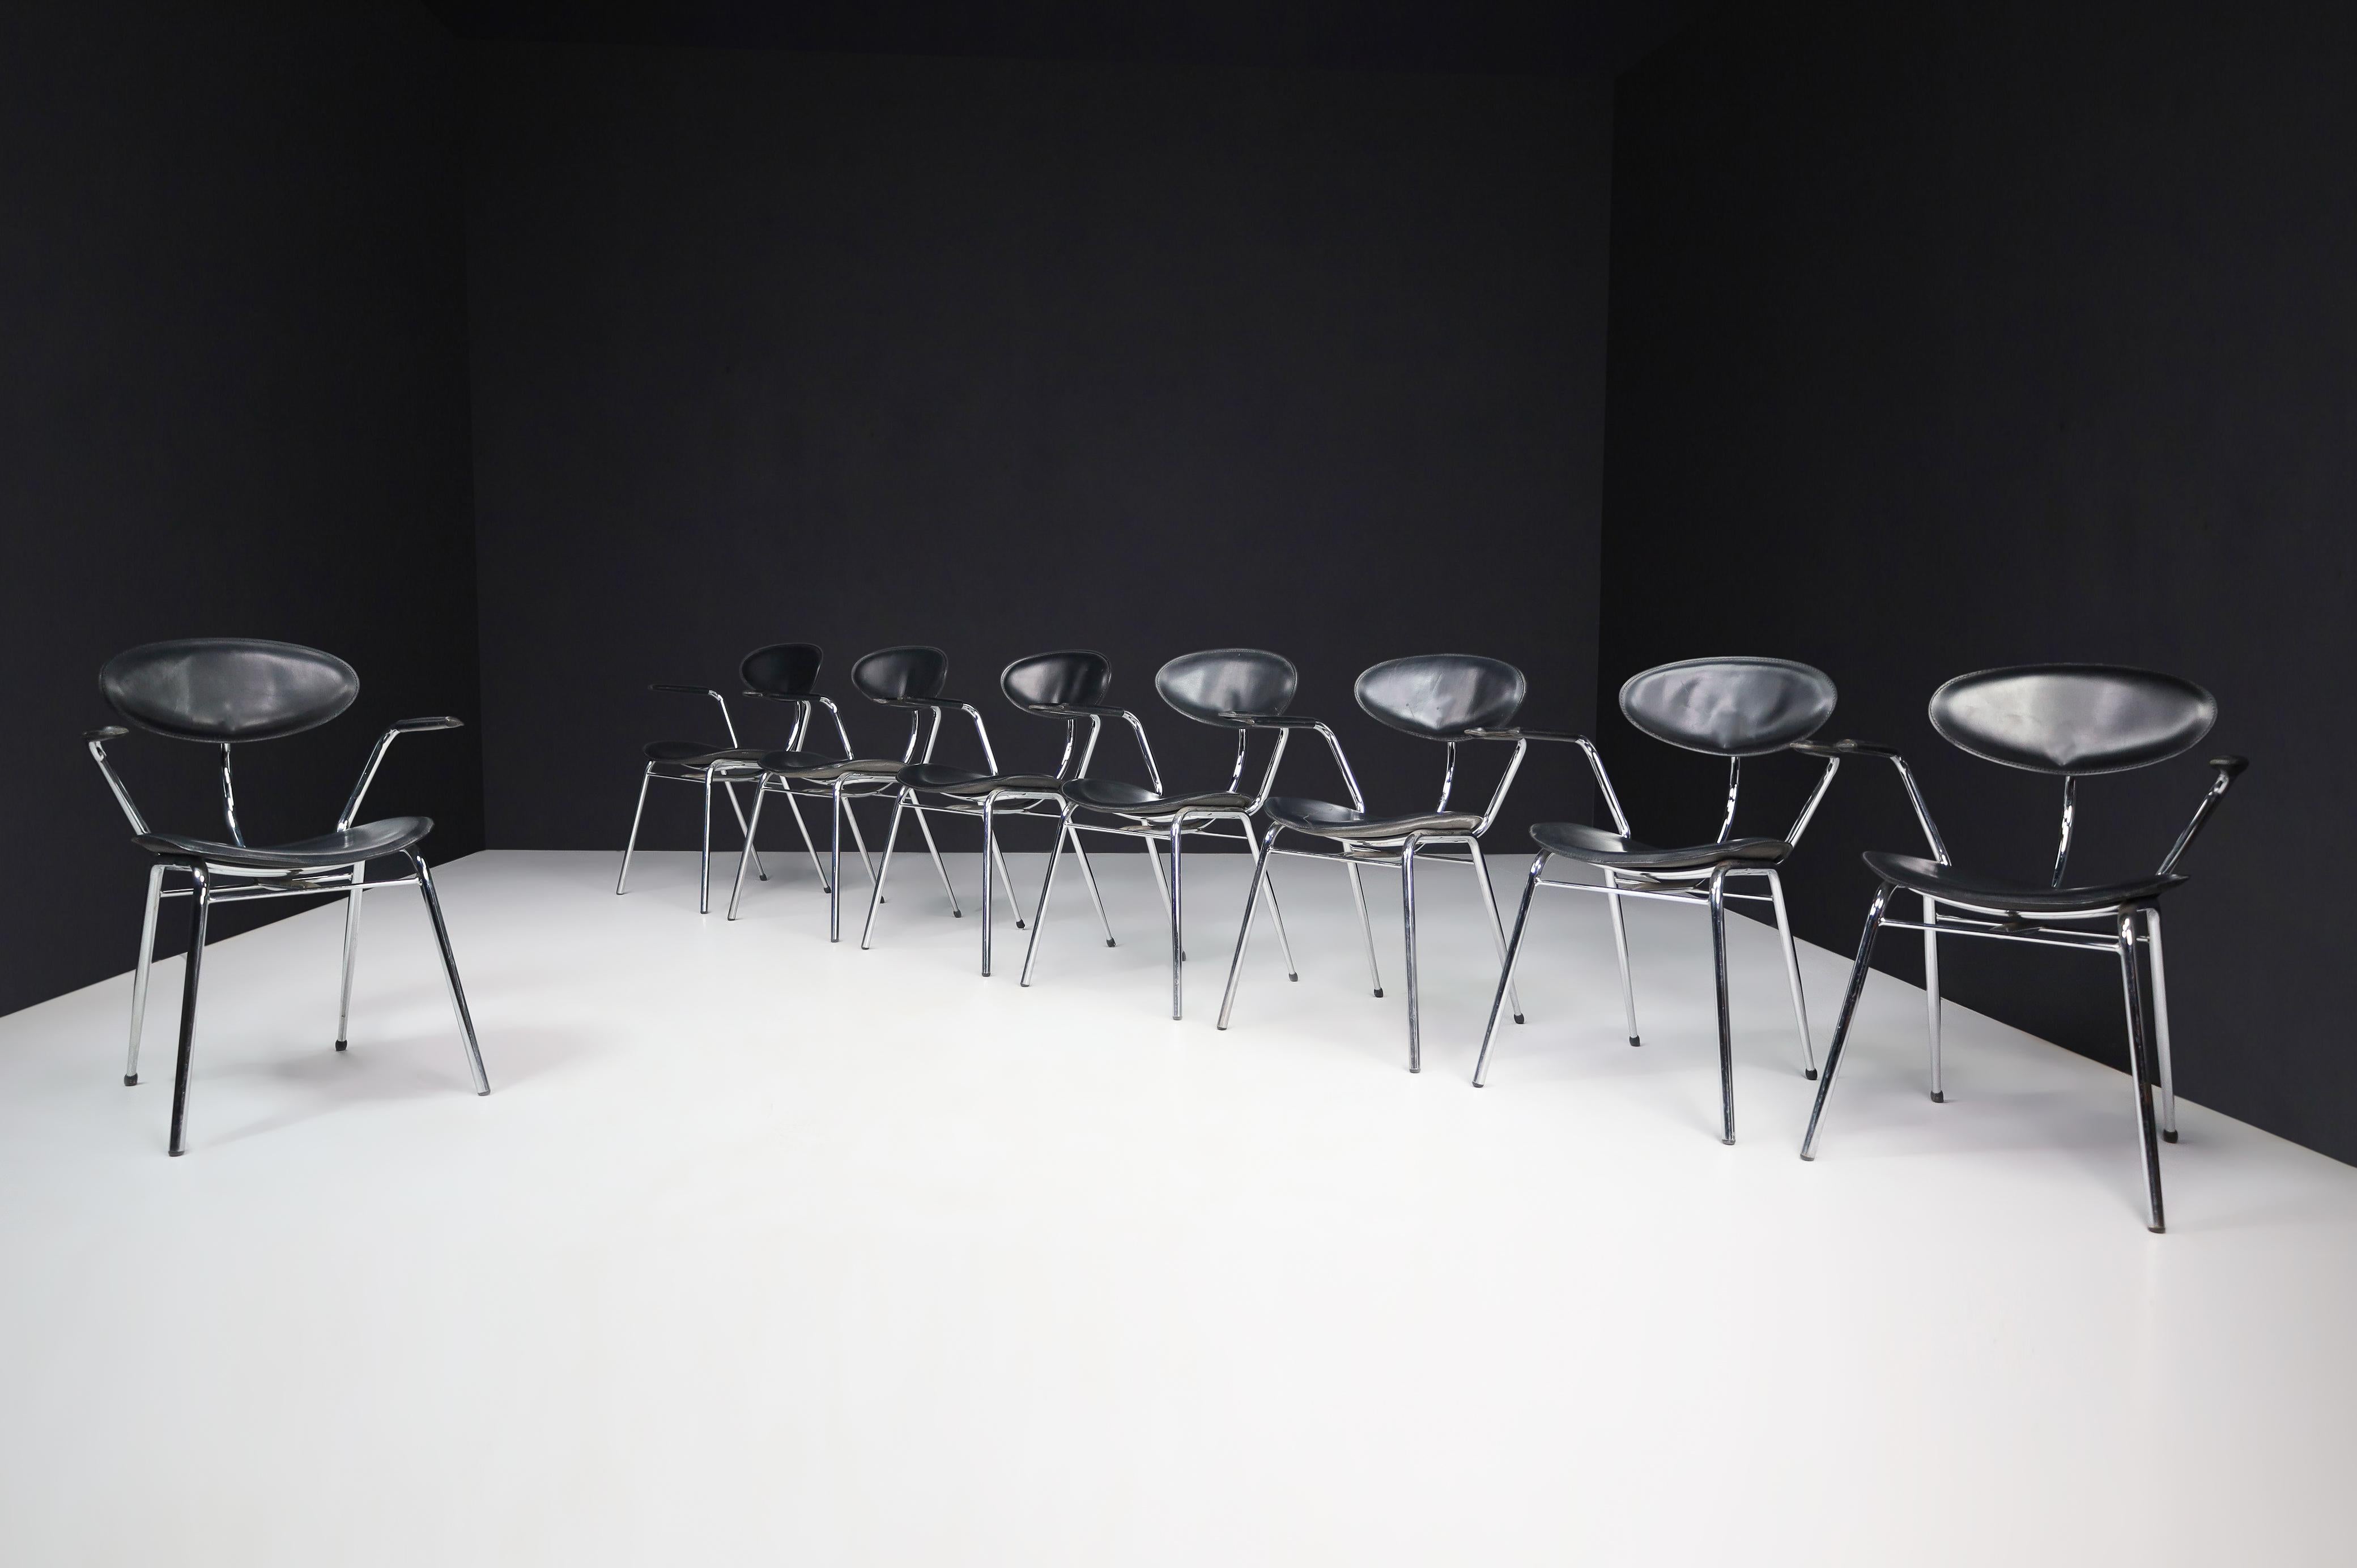 Ensemble de huit chaises de salle à manger en cuir noir et acier chromé, Italie, années 1970

Ces chaises de salle à manger sont un magnifique et emblématique ensemble de huit fauteuils qui ont été conçus et produits en Italie au cours des années